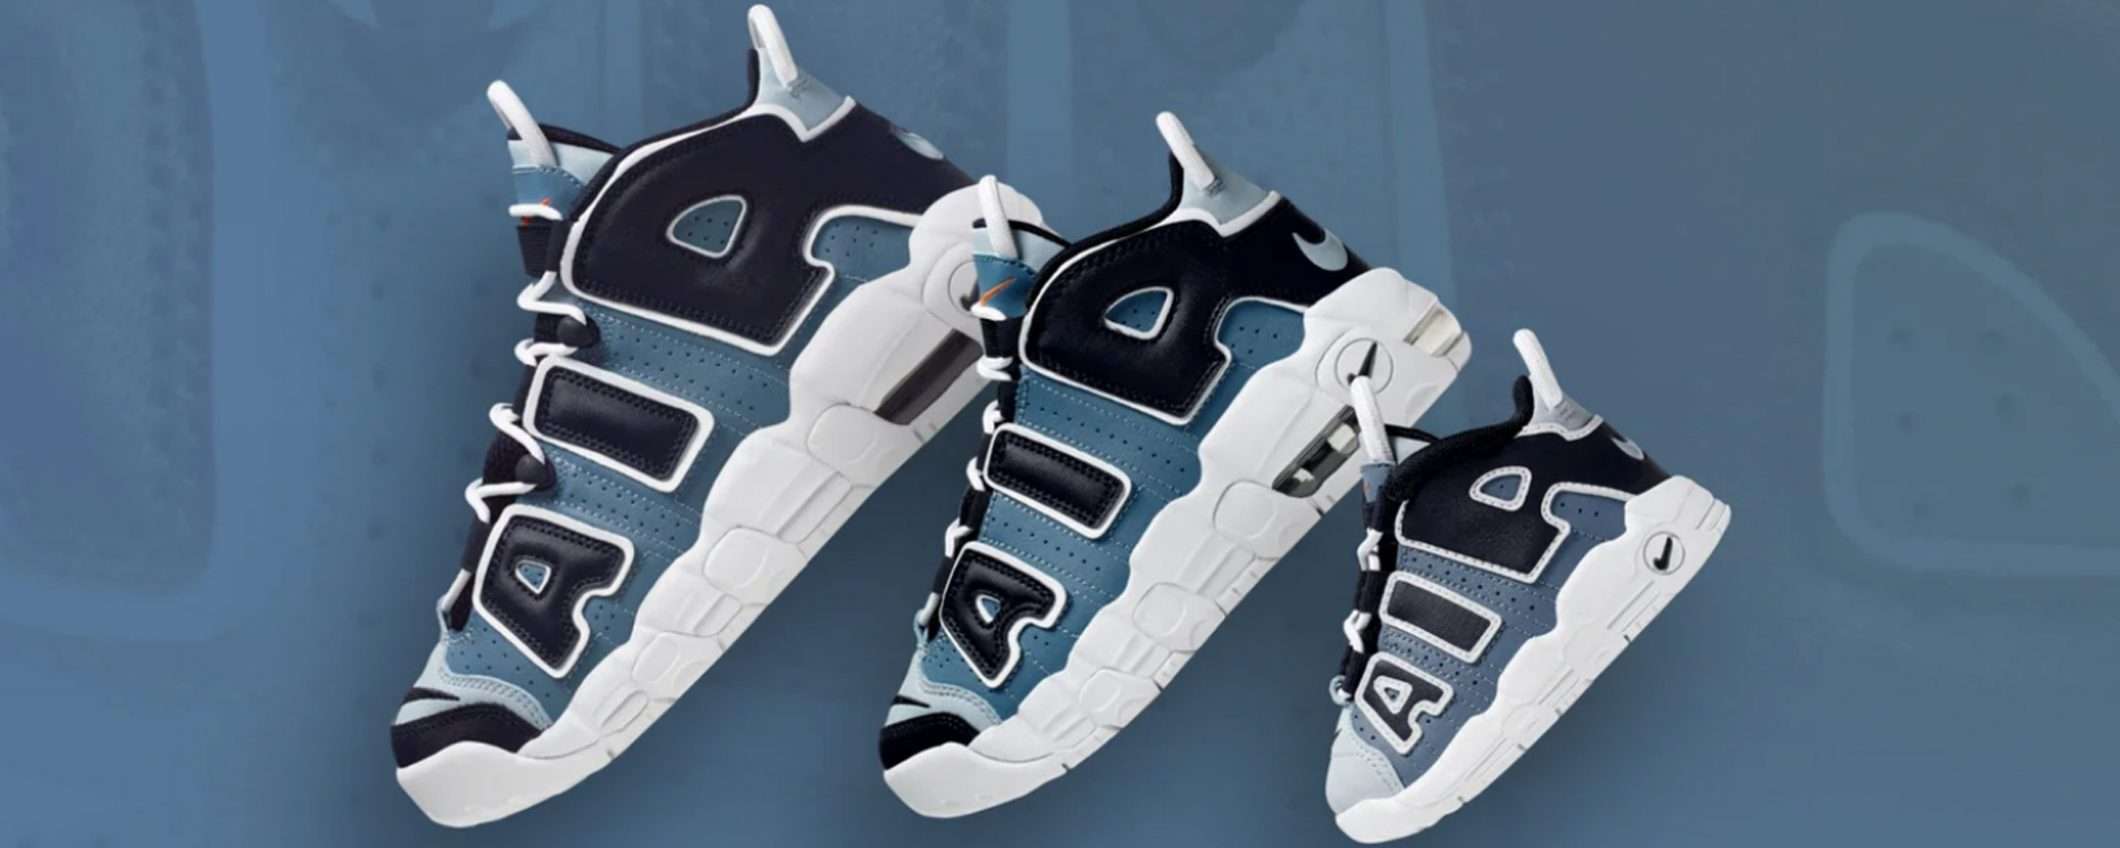 Nike lancia un abbonamento per... le scarpe